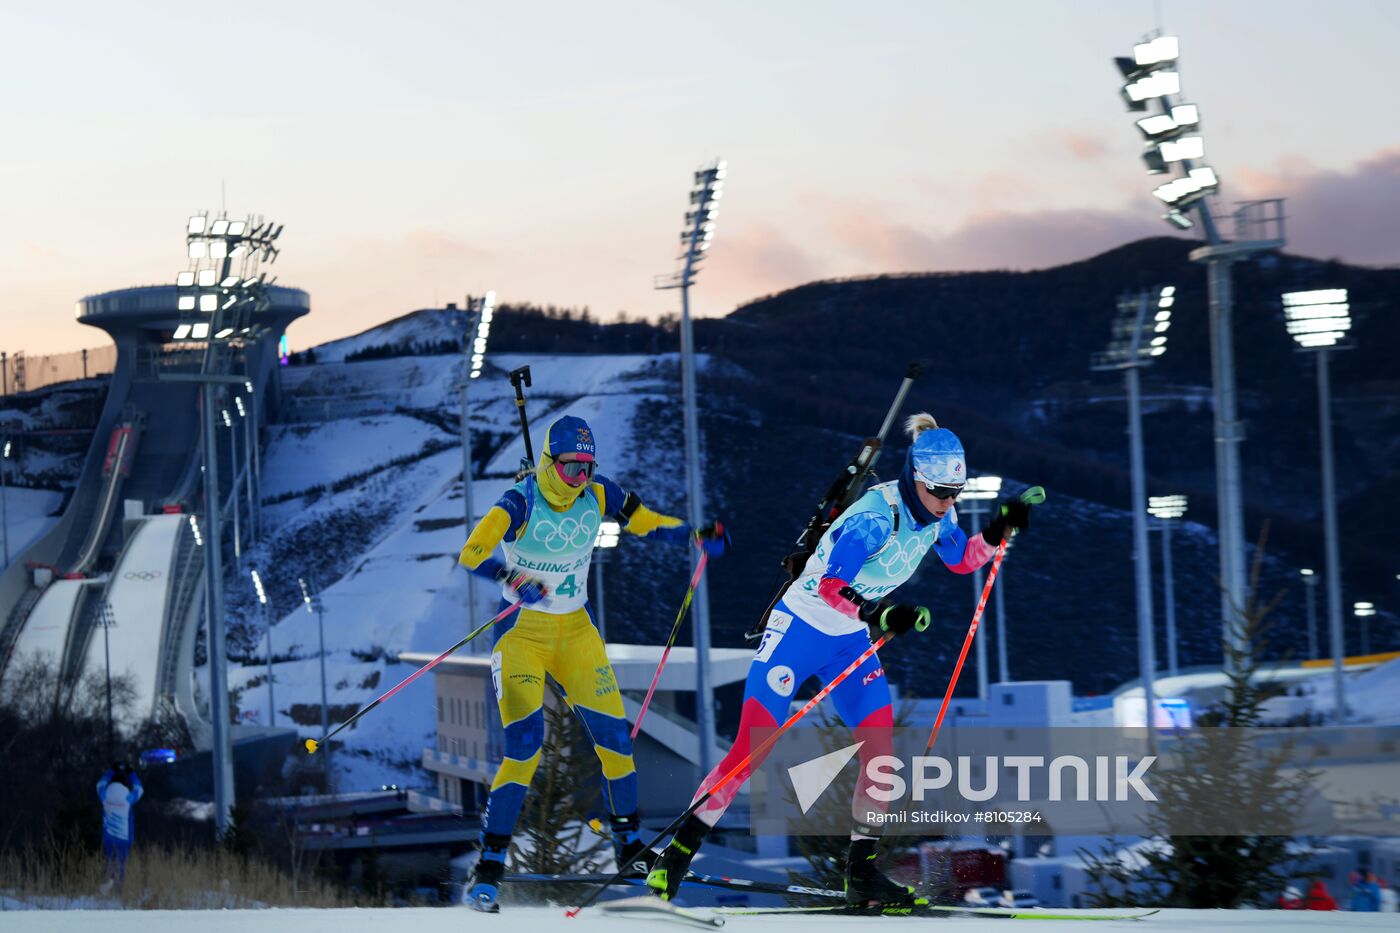 China Olympics 2022 Biathlon Mixed Relay